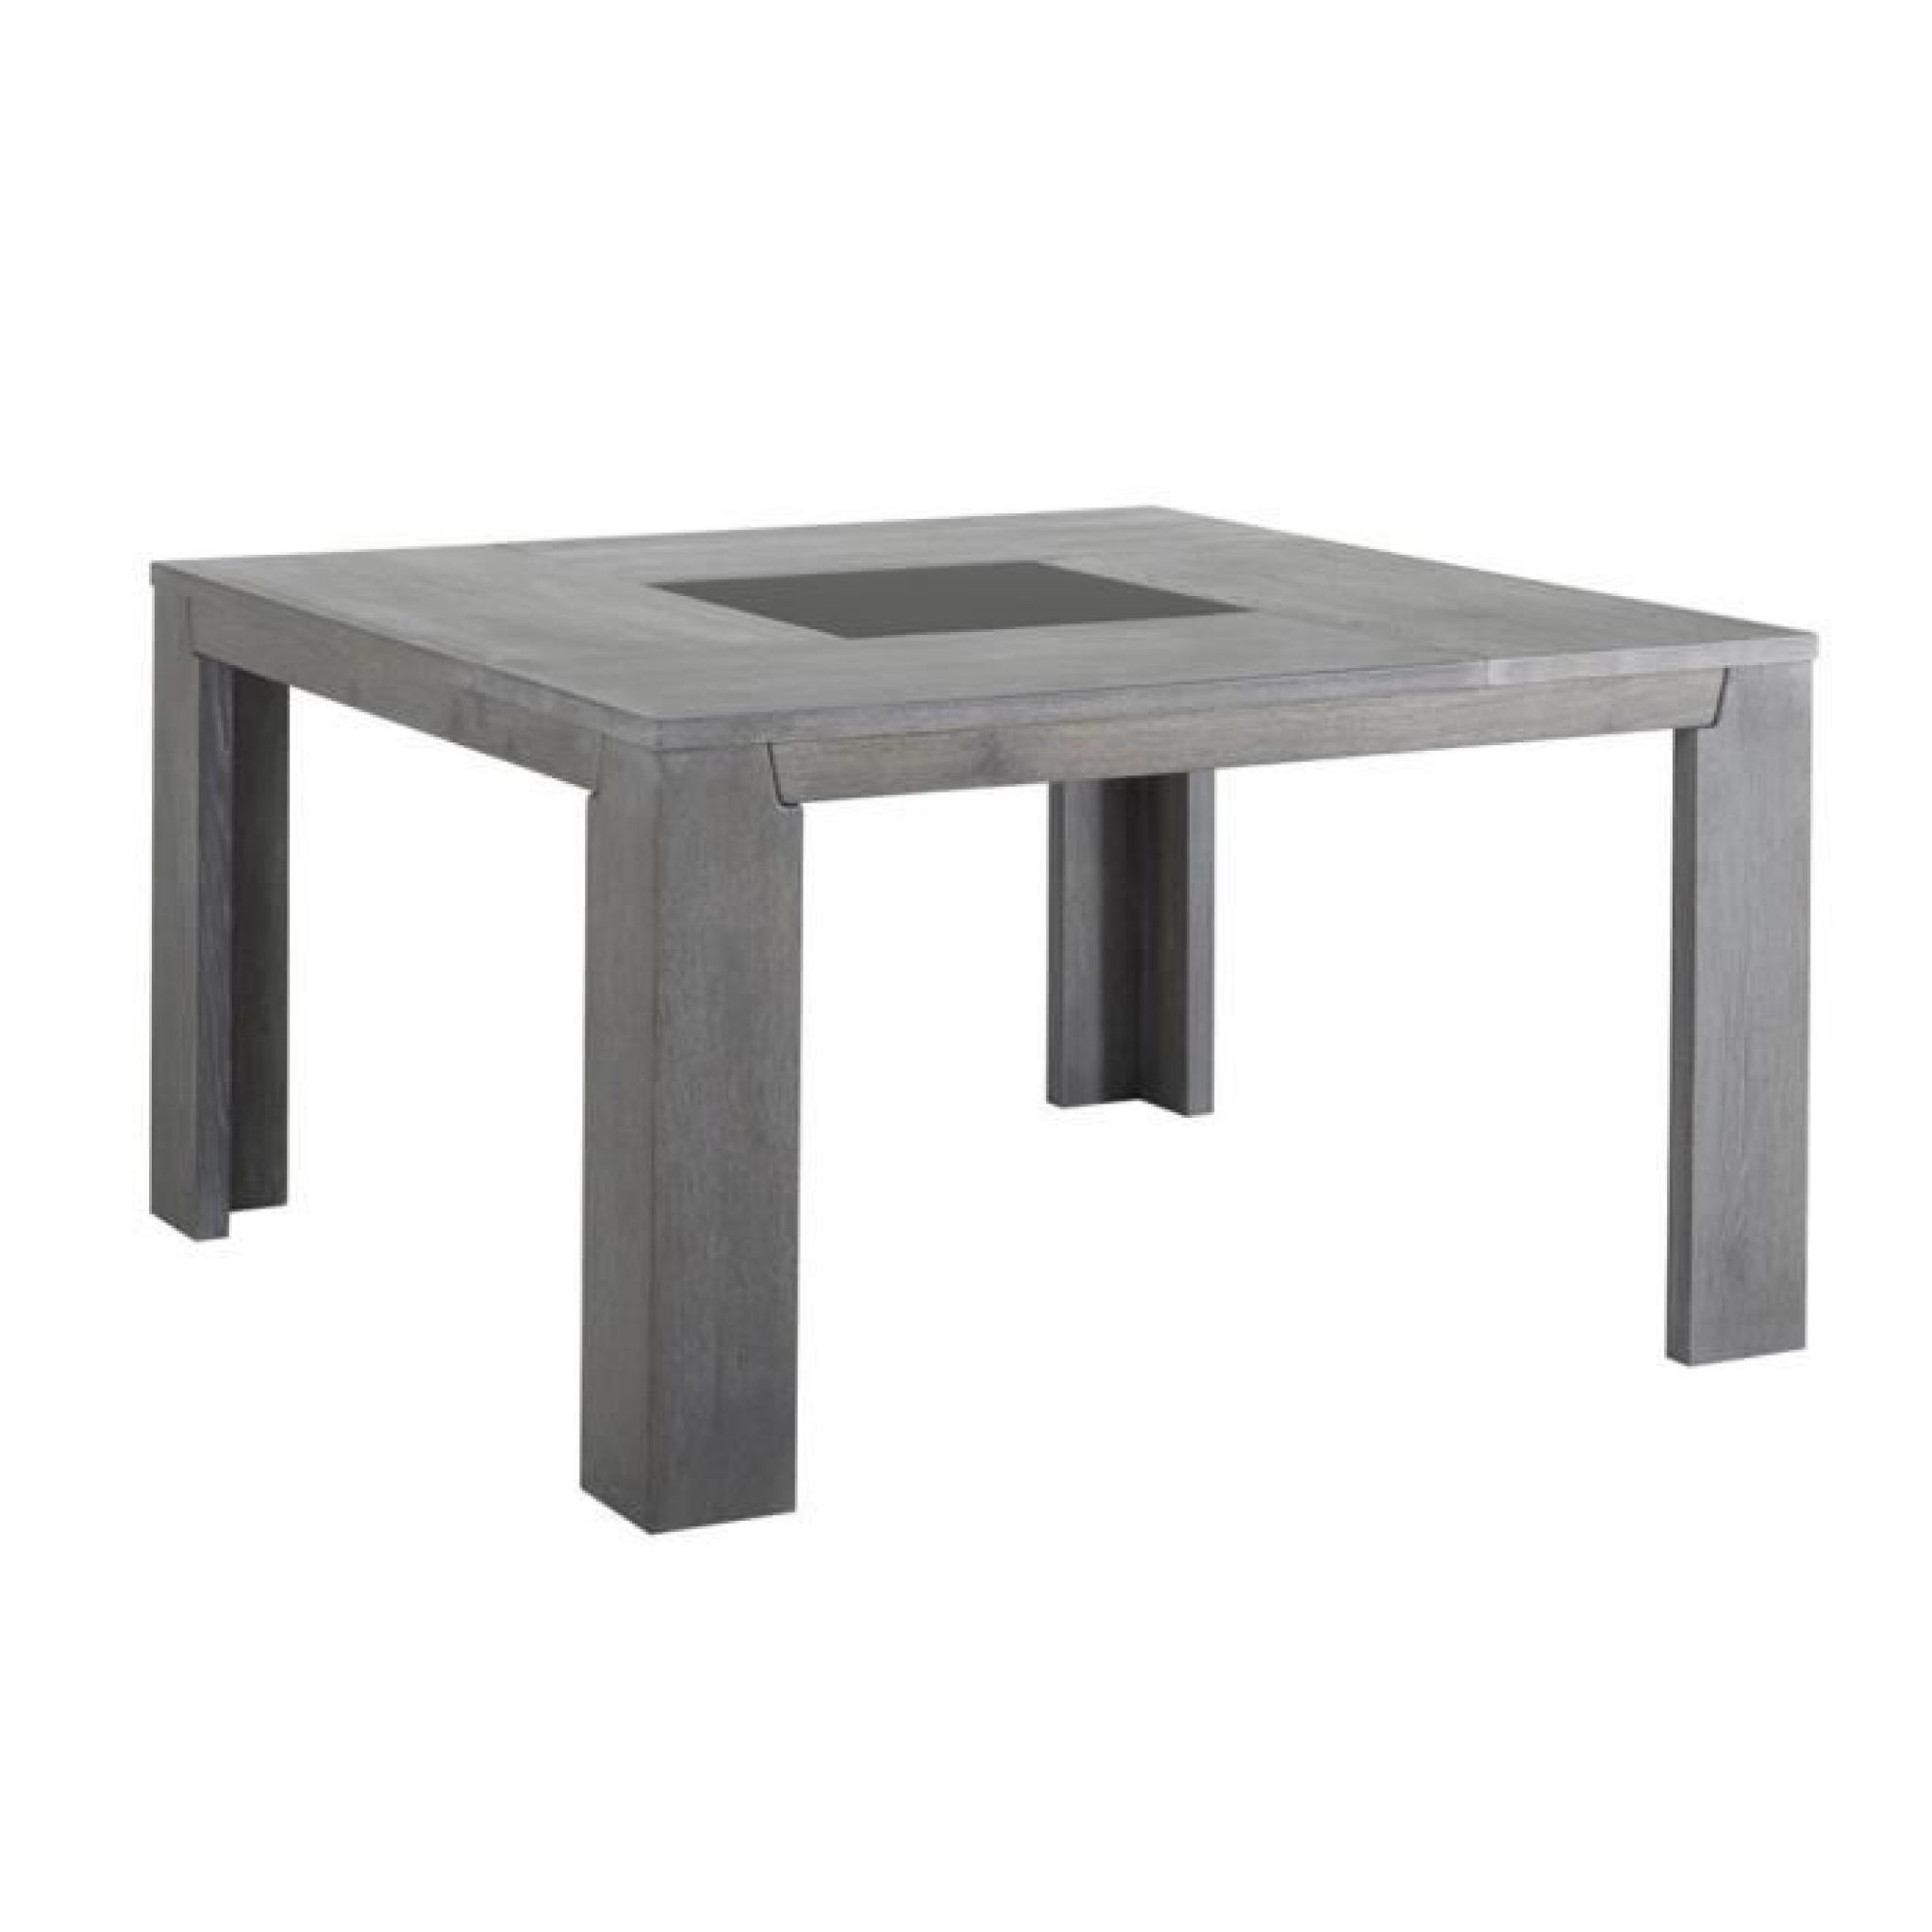 Table de repas carrée coloris Chêne gris, H 77 x L 140 x P 140 cm